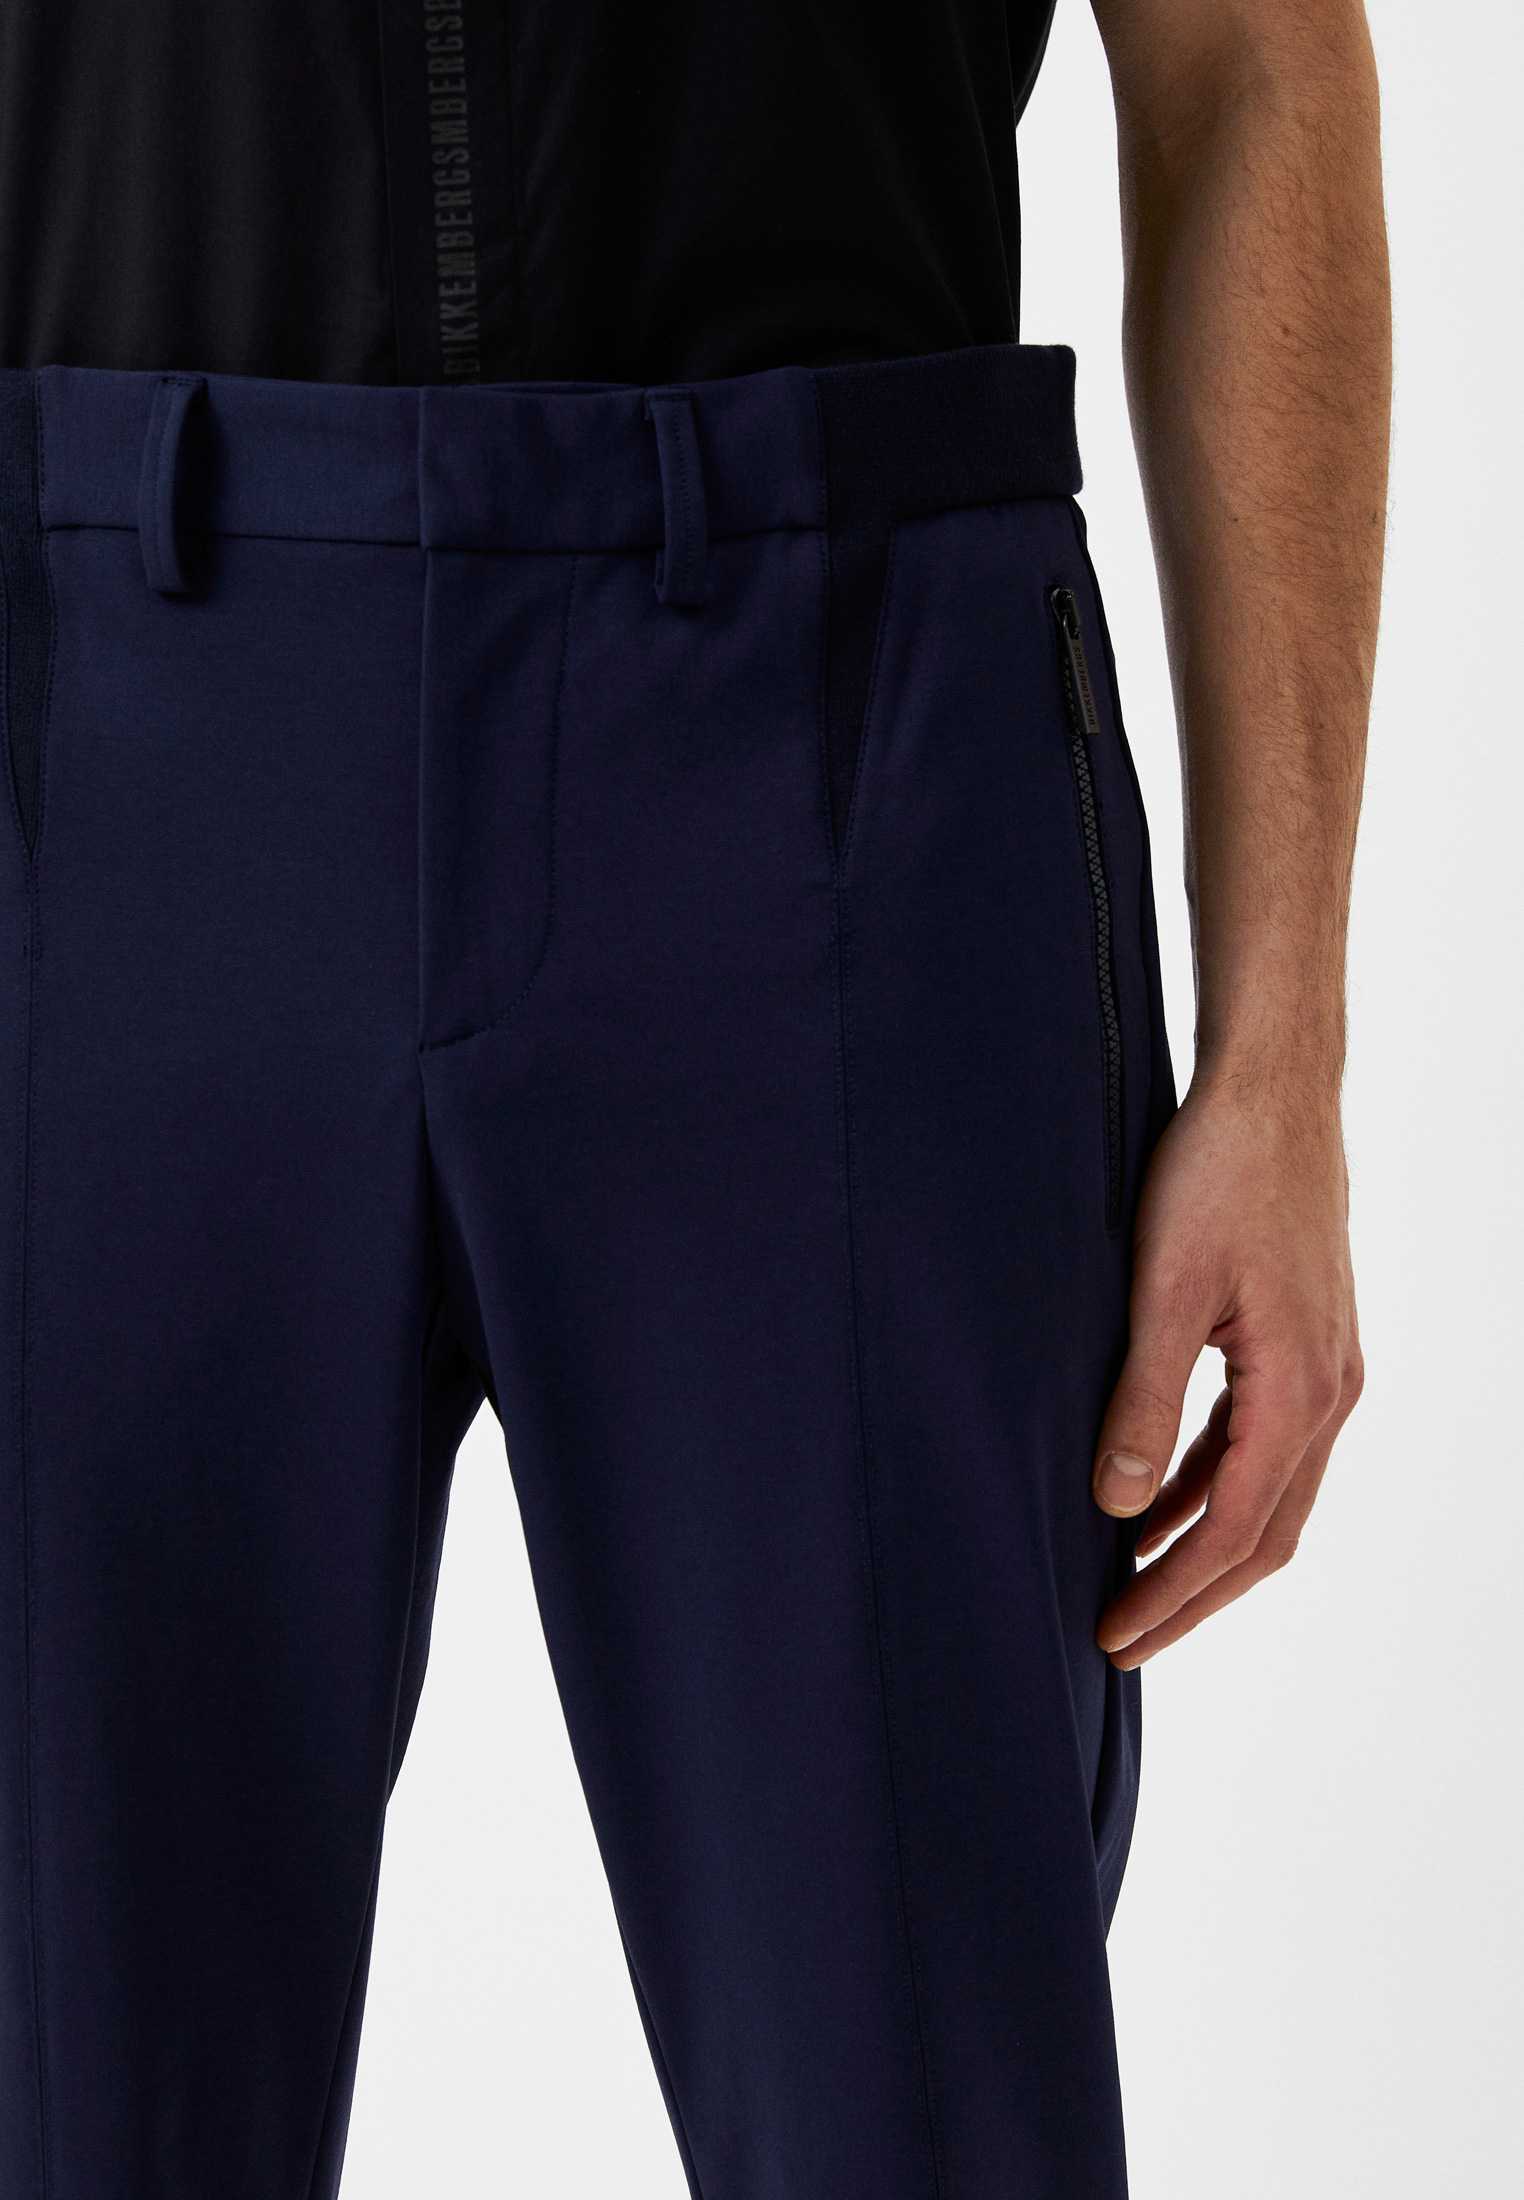 Мужские классические брюки Bikkembergs (Биккембергс) C 1 142 00 E 2031: изображение 4